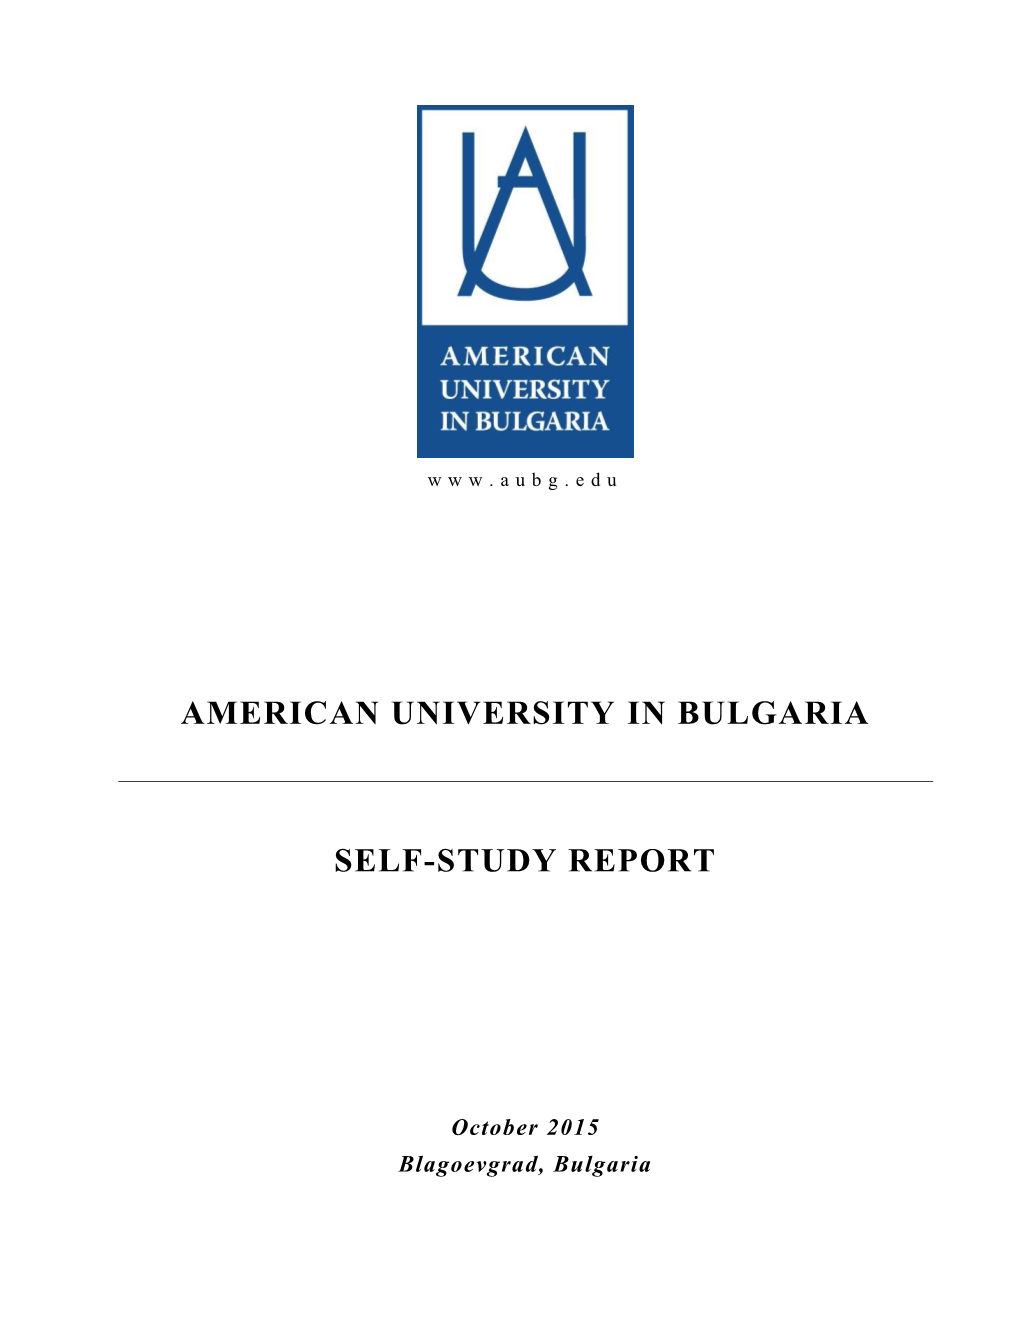 American University in Bulgaria Self-Study Report